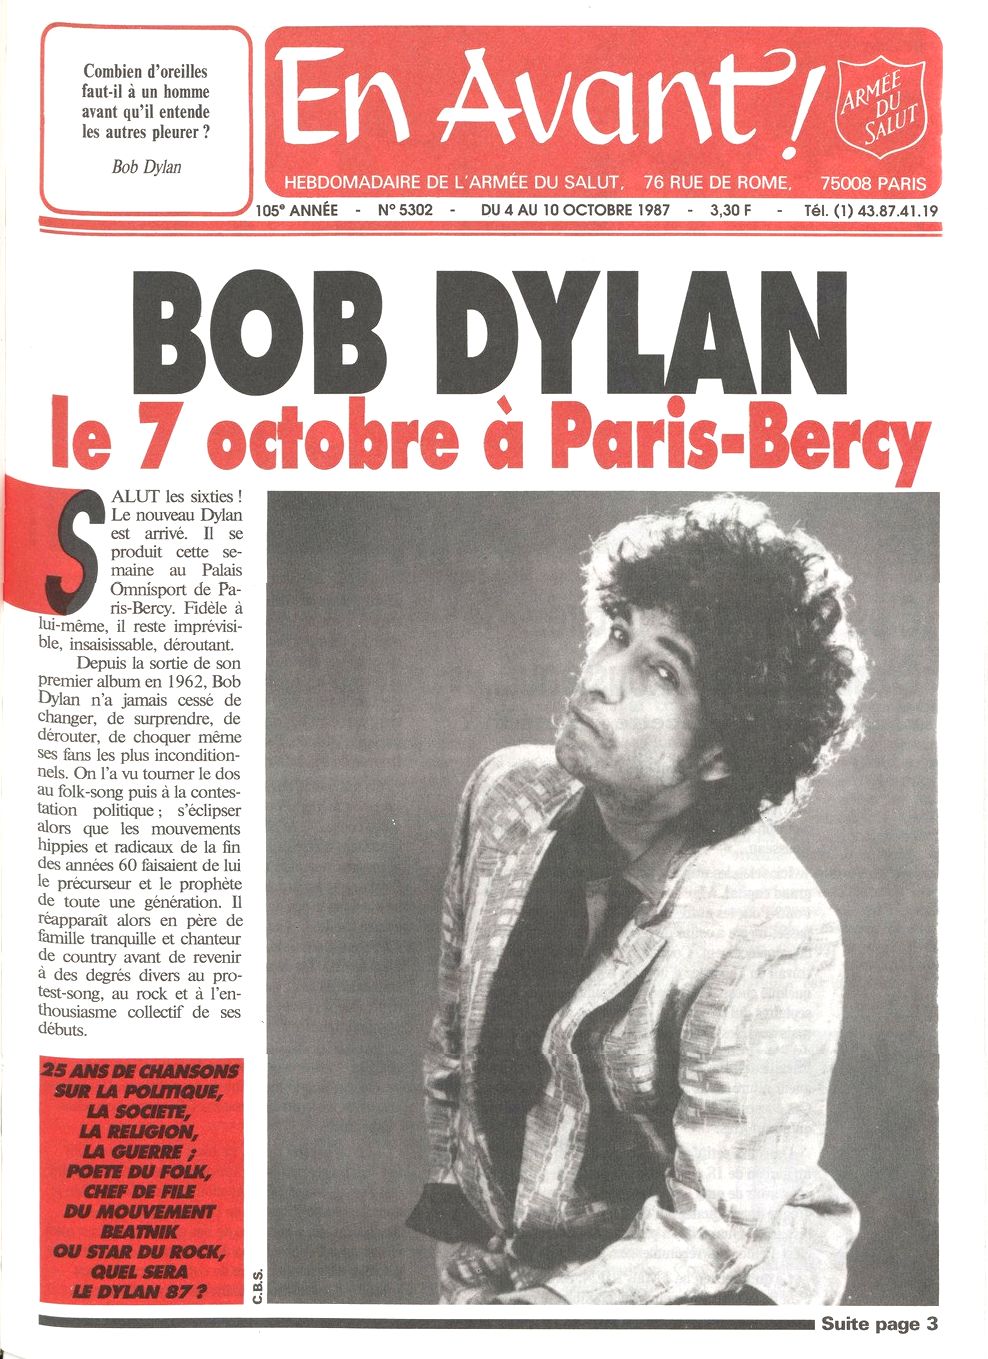 en avant! Bob Dylan front cover